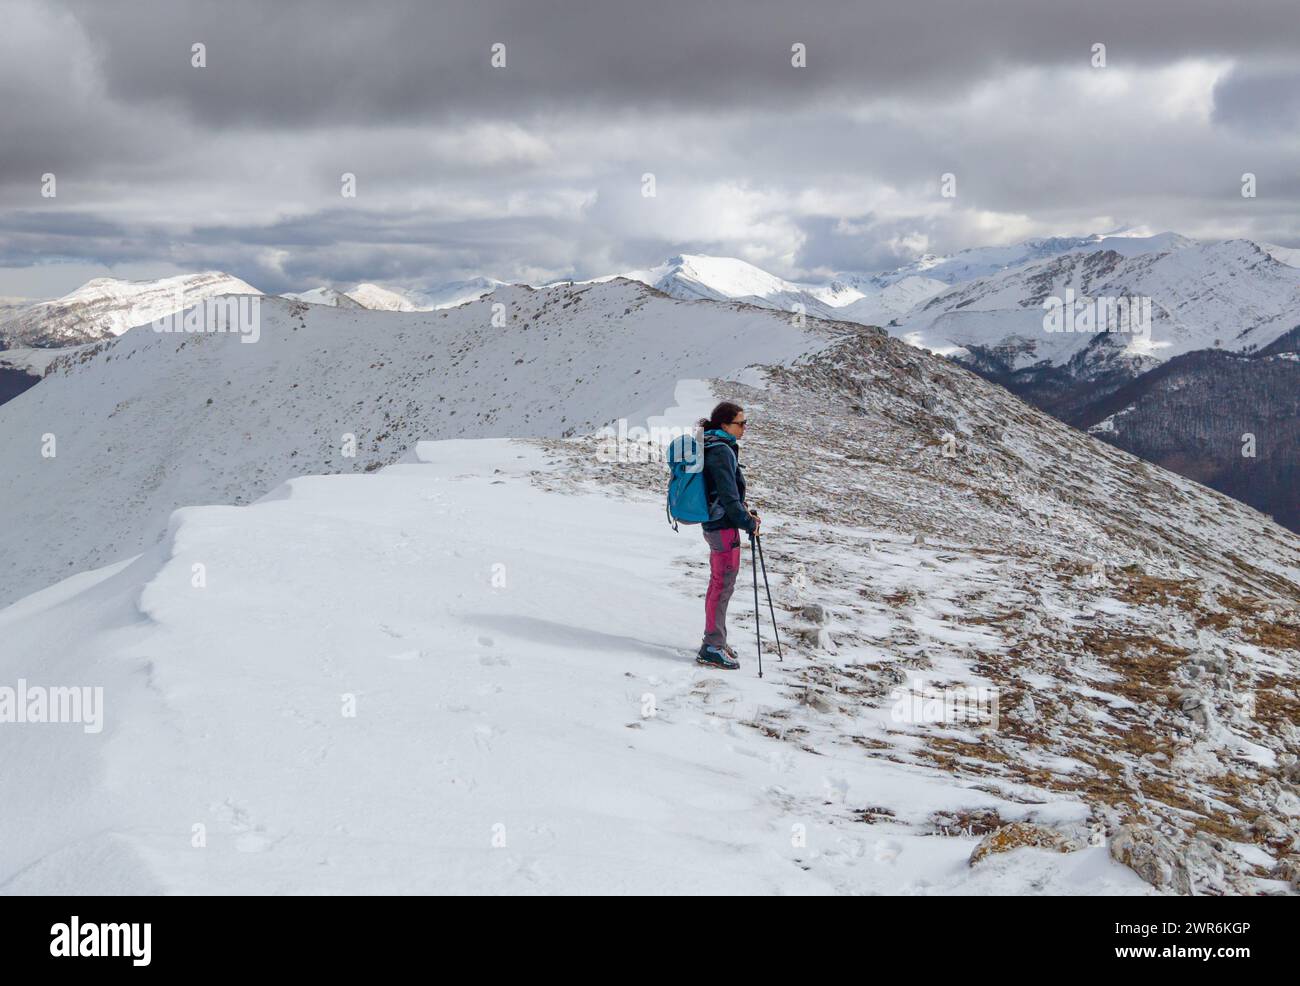 Parco Velino Sirente, Italia - il suggestivo parco naturale di montagna in Abruzzo con neve durante l'inverno. Qui in particolare Monte Cava 2000 m. Foto Stock